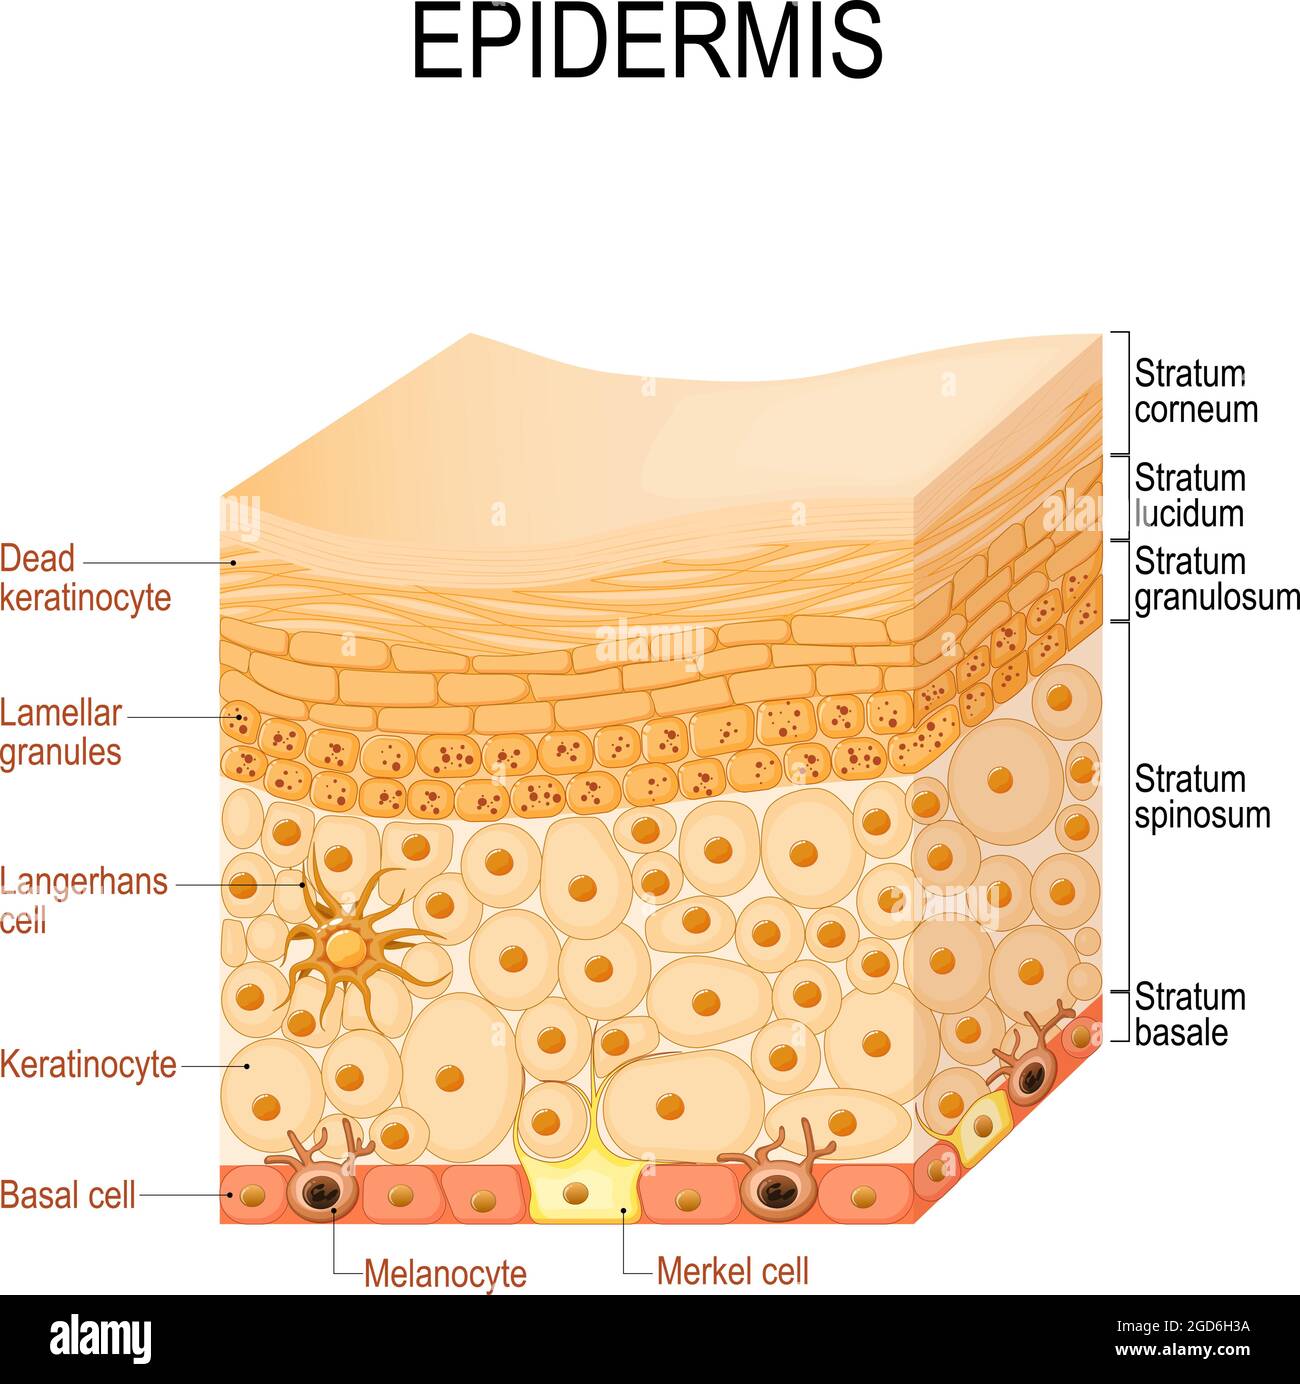 Anatomie de l'épiderme. Couches et structure cellulaire de la peau humaine. Gros plan de l'épiderme. Illustration vectorielle Illustration de Vecteur